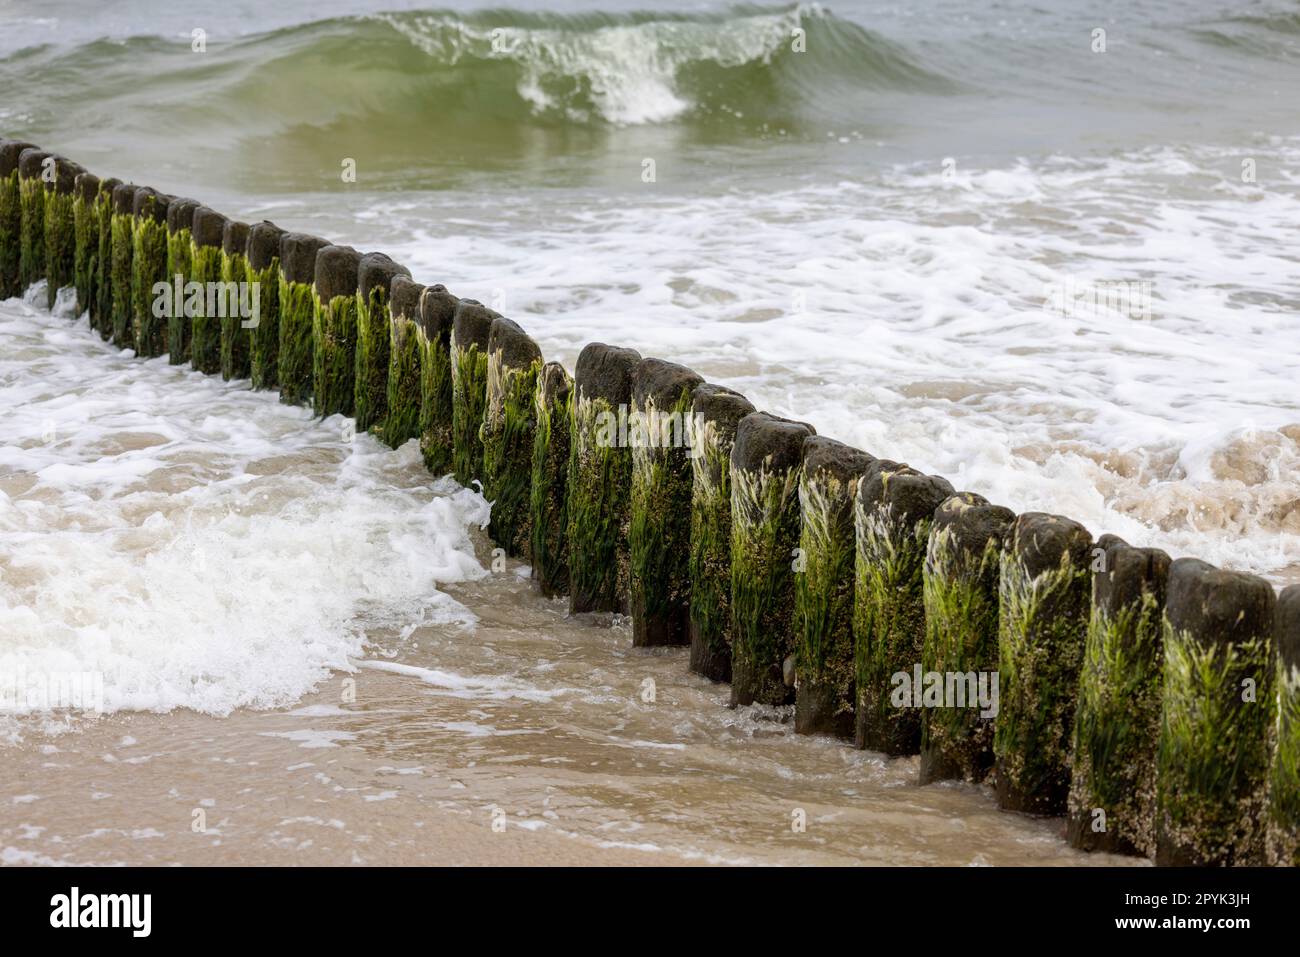 Brise-lames en bois avec algues vertes dans l'eau mousseuse de la mer Baltique, Miedzyzdroje, île de Wolin, Pologne Banque D'Images